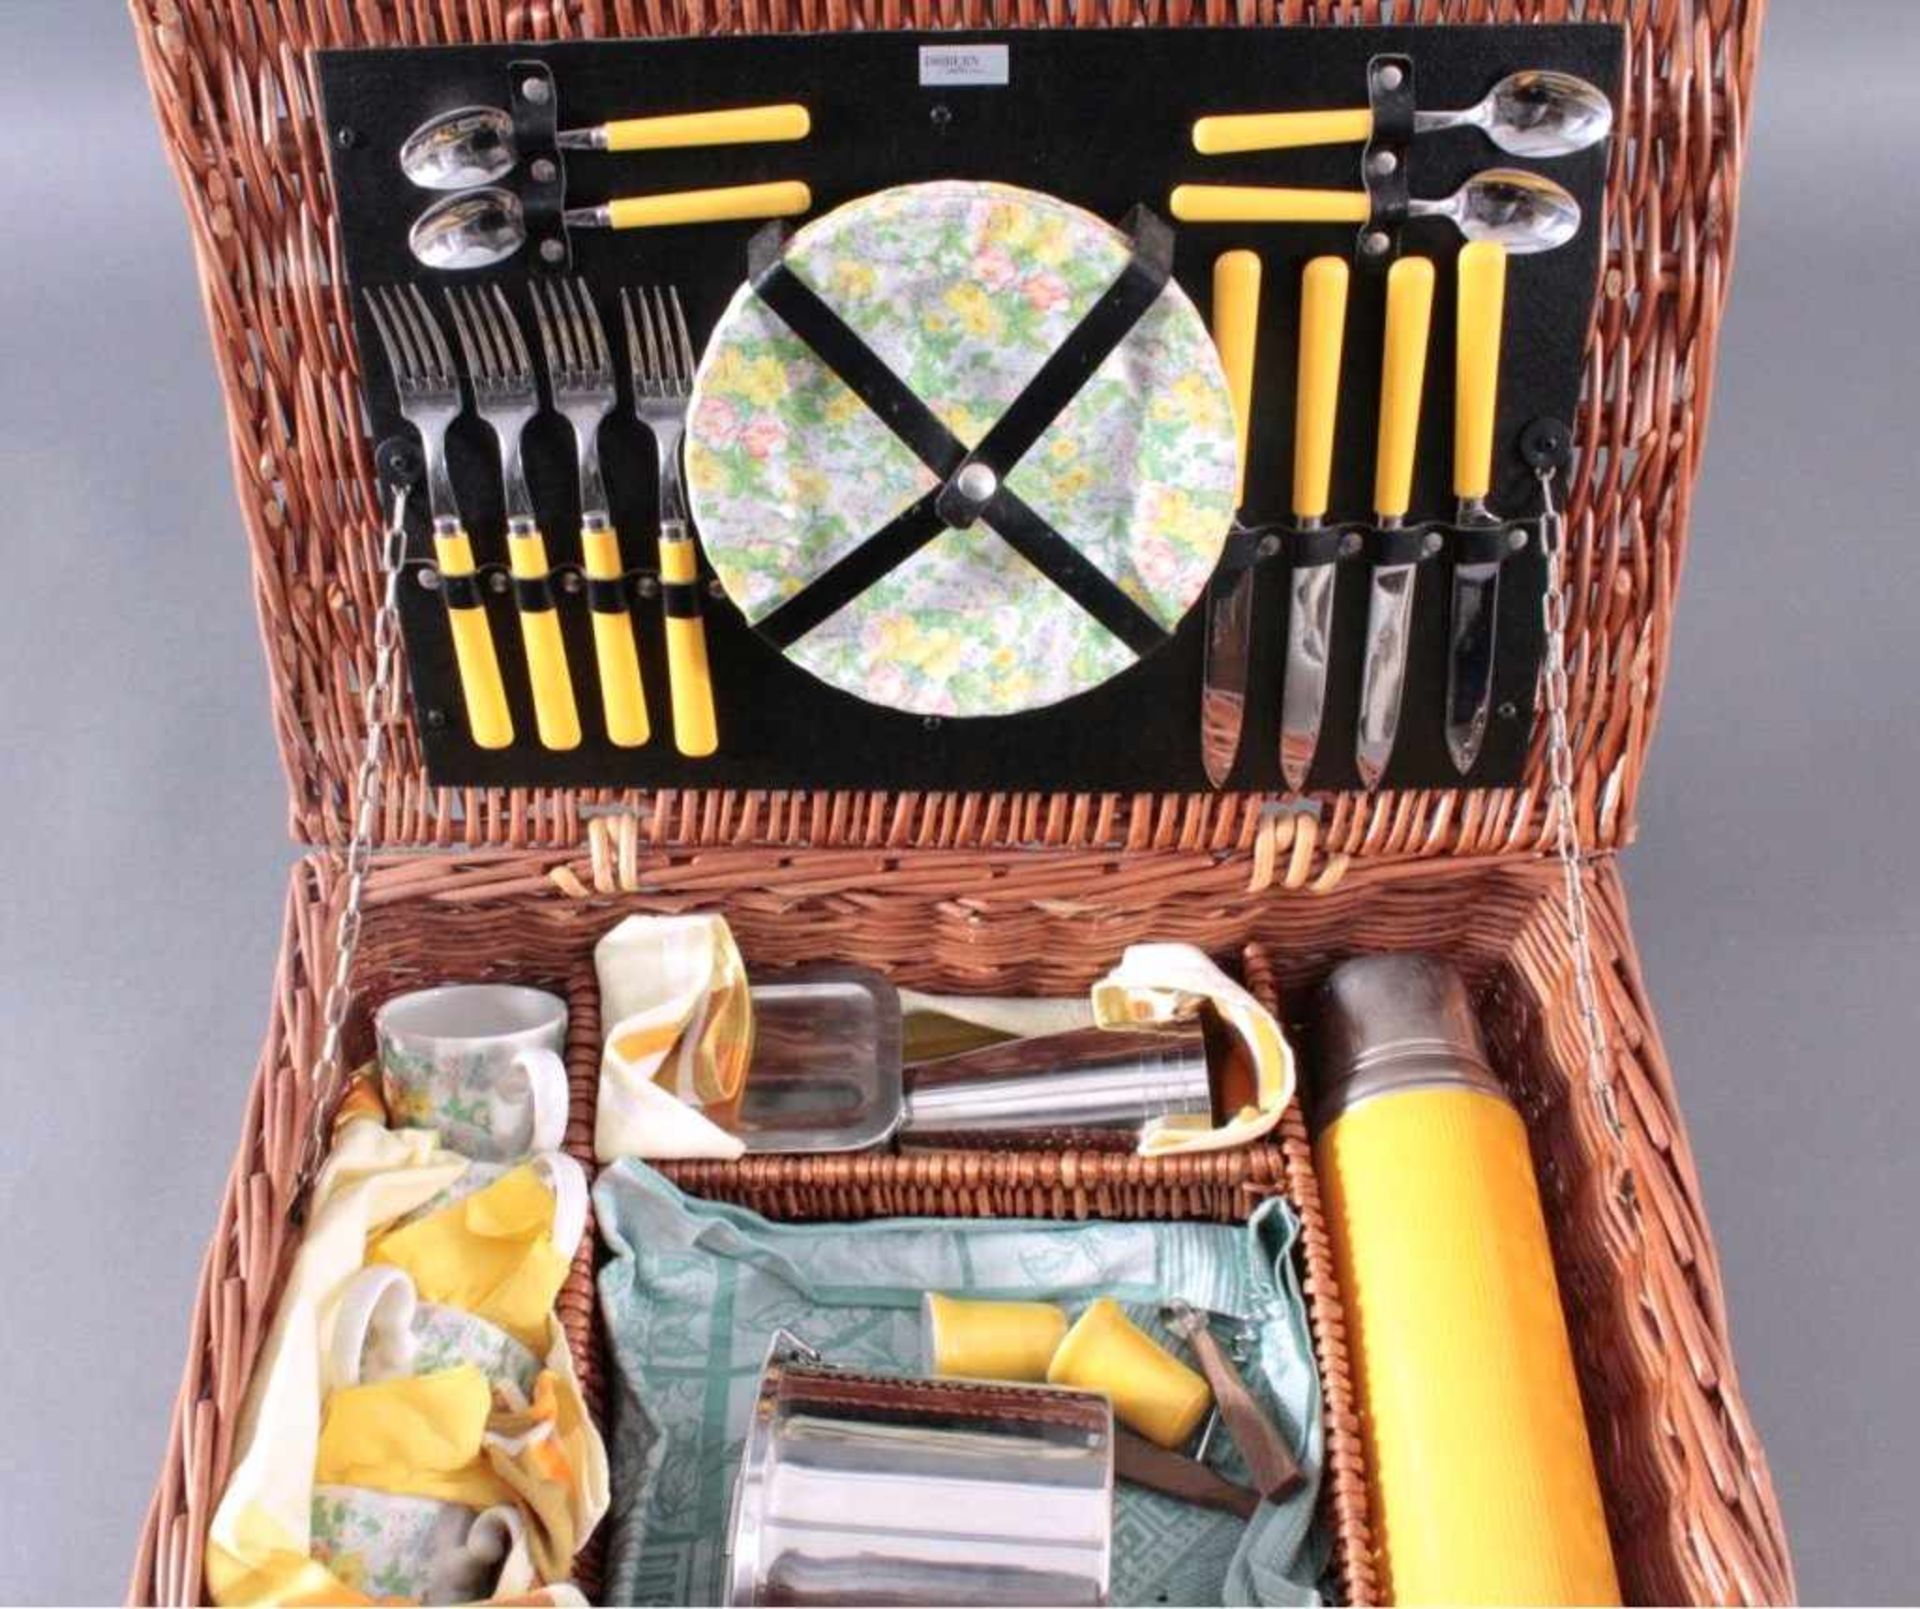 Picknickkorb für 4 PersonenWeidekorb, Dibbern Collektion, England, unbenutzter Zustand,31-teilig, - Bild 2 aus 6